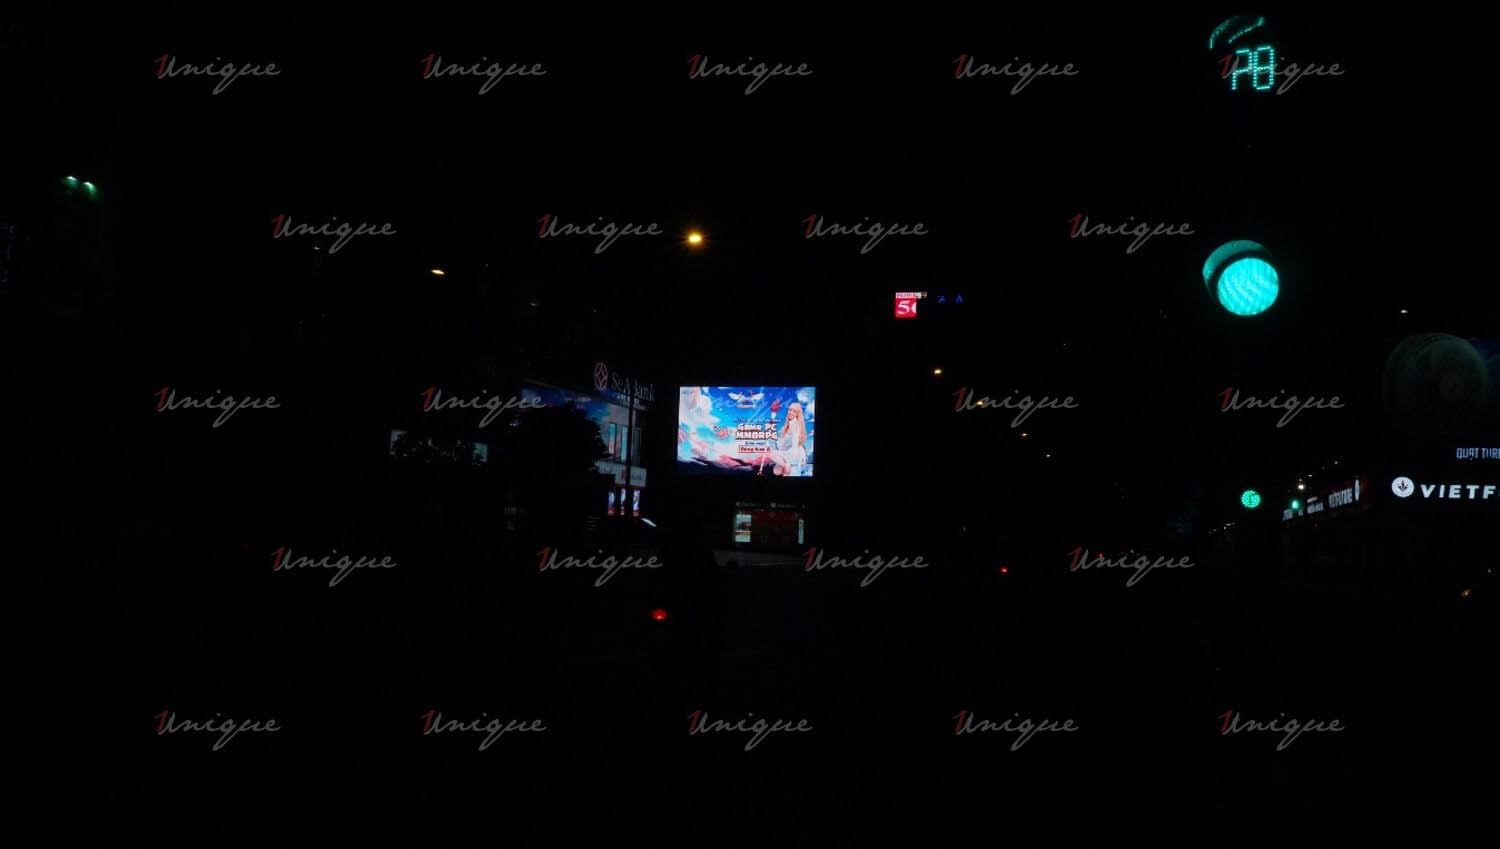 VTC Game quảng cáo màn hình Led ngoài trời tại ngã tư Nguyễn Thị Minh Khai - Trương Định